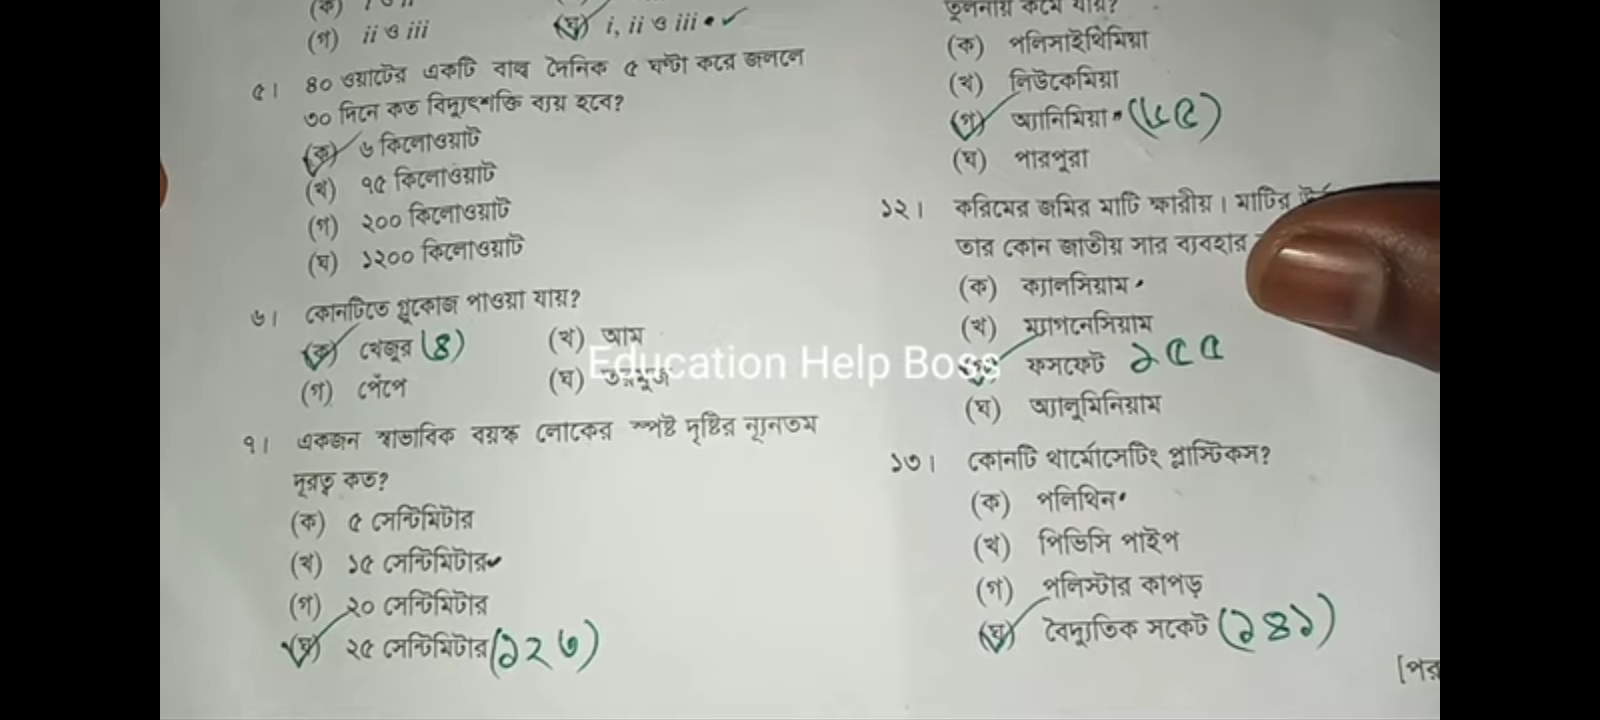 এসএসসি রাজশাহী বোর্ড বিজ্ঞান বহুনির্বাচনি (MCQ) উত্তরমালা সমাধান ২০২৩, SSC Rajshahi Board Science MCQ Question & Answer 2023, এসএসসি বিজ্ঞান রাজশাহী বোর্ড এমসিকিউ সমাধান ২০২৩